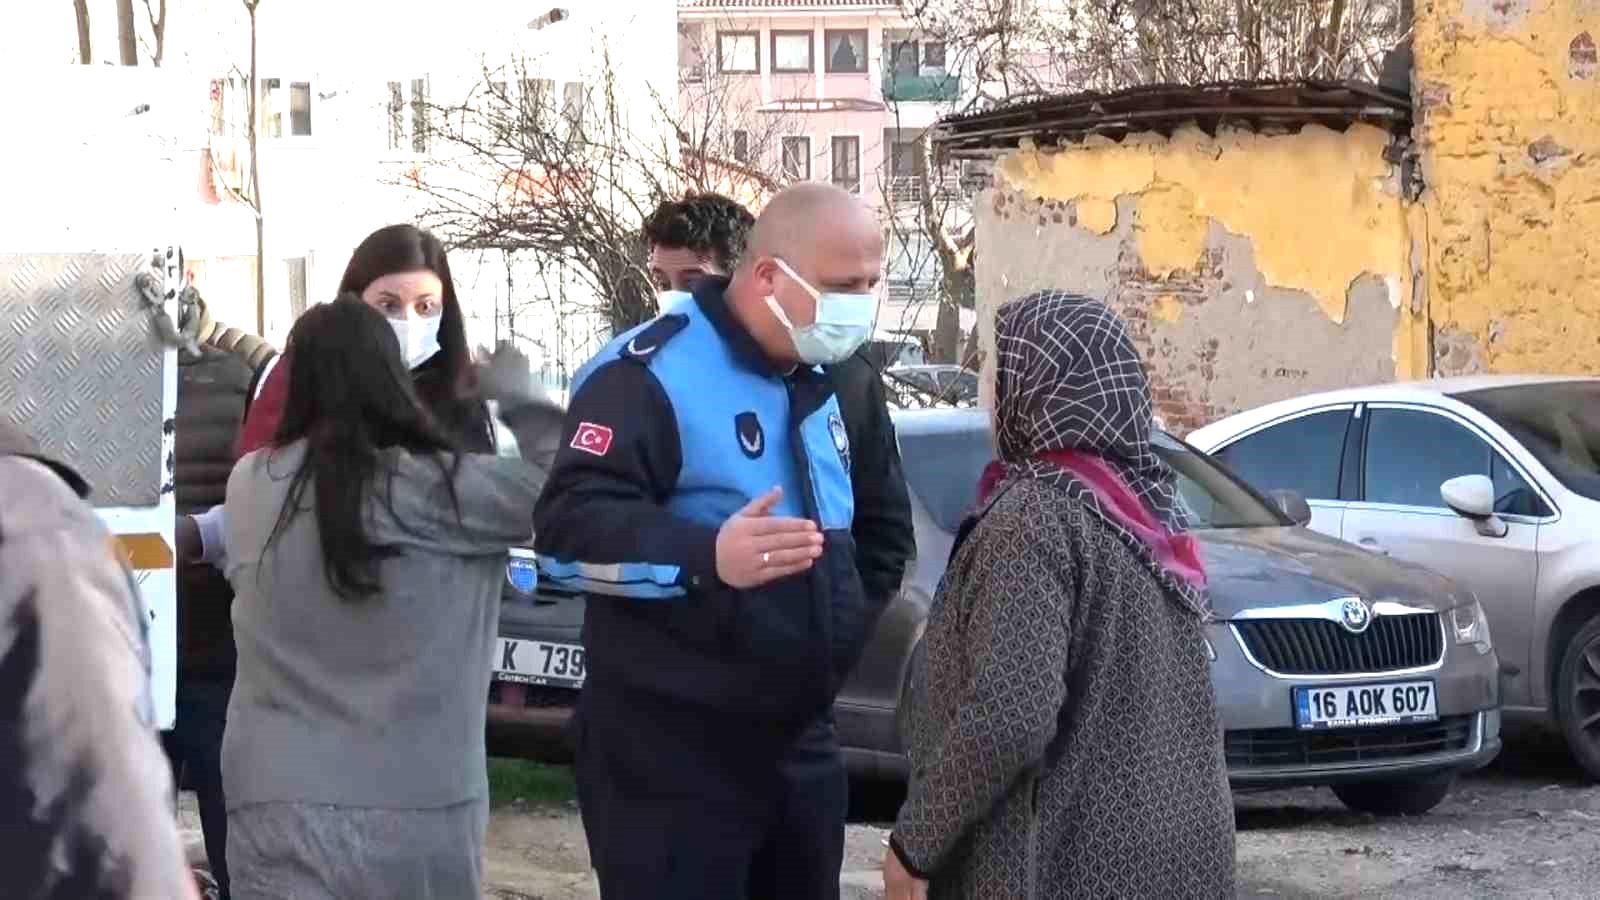 Çöp evi boşaltılan kadın sinir krizi geçirdi, kendisini sakinleştirmek isteyen polislere saldırdı